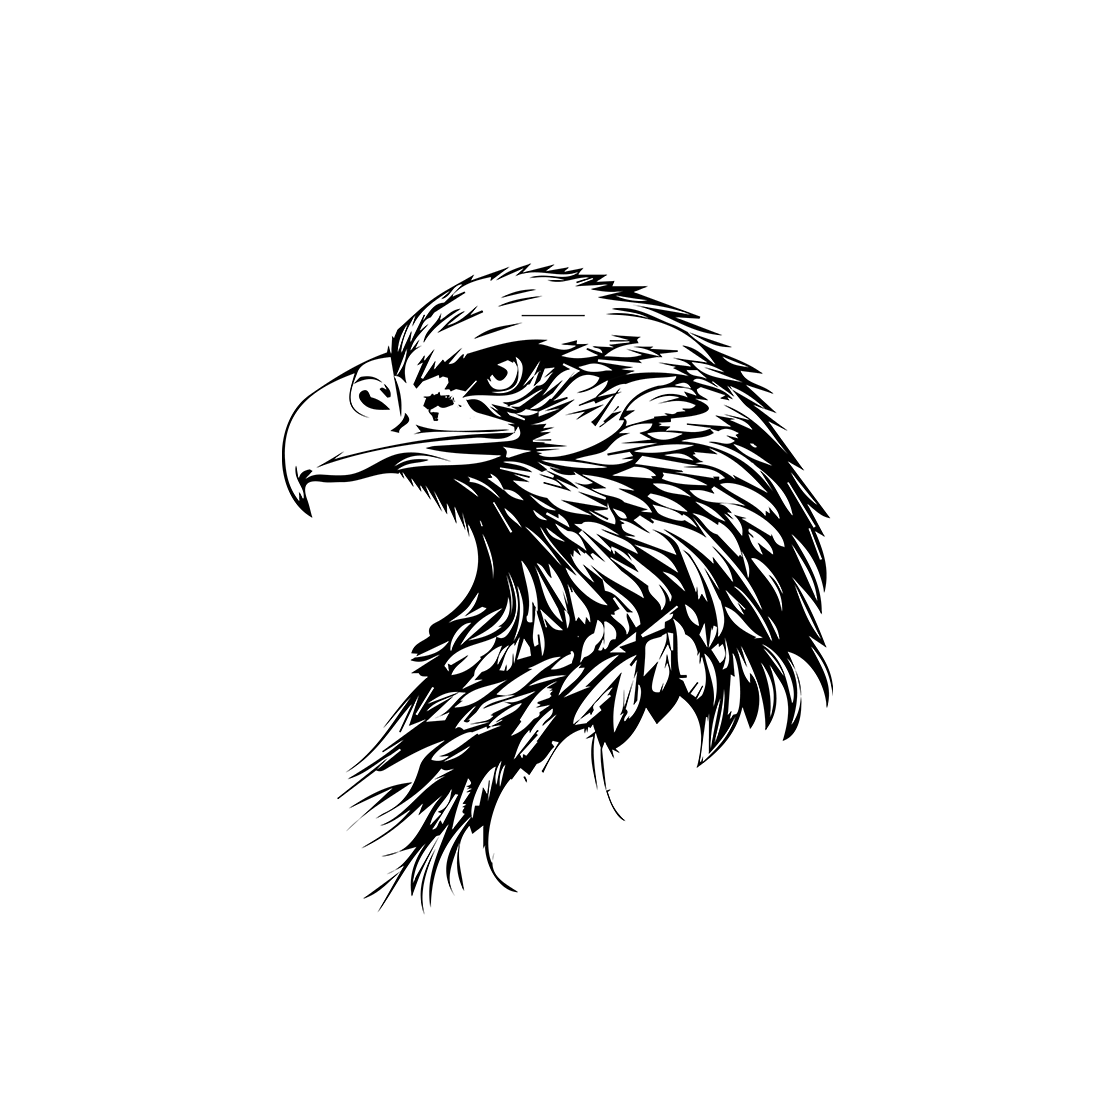 Eagle logo cover image.